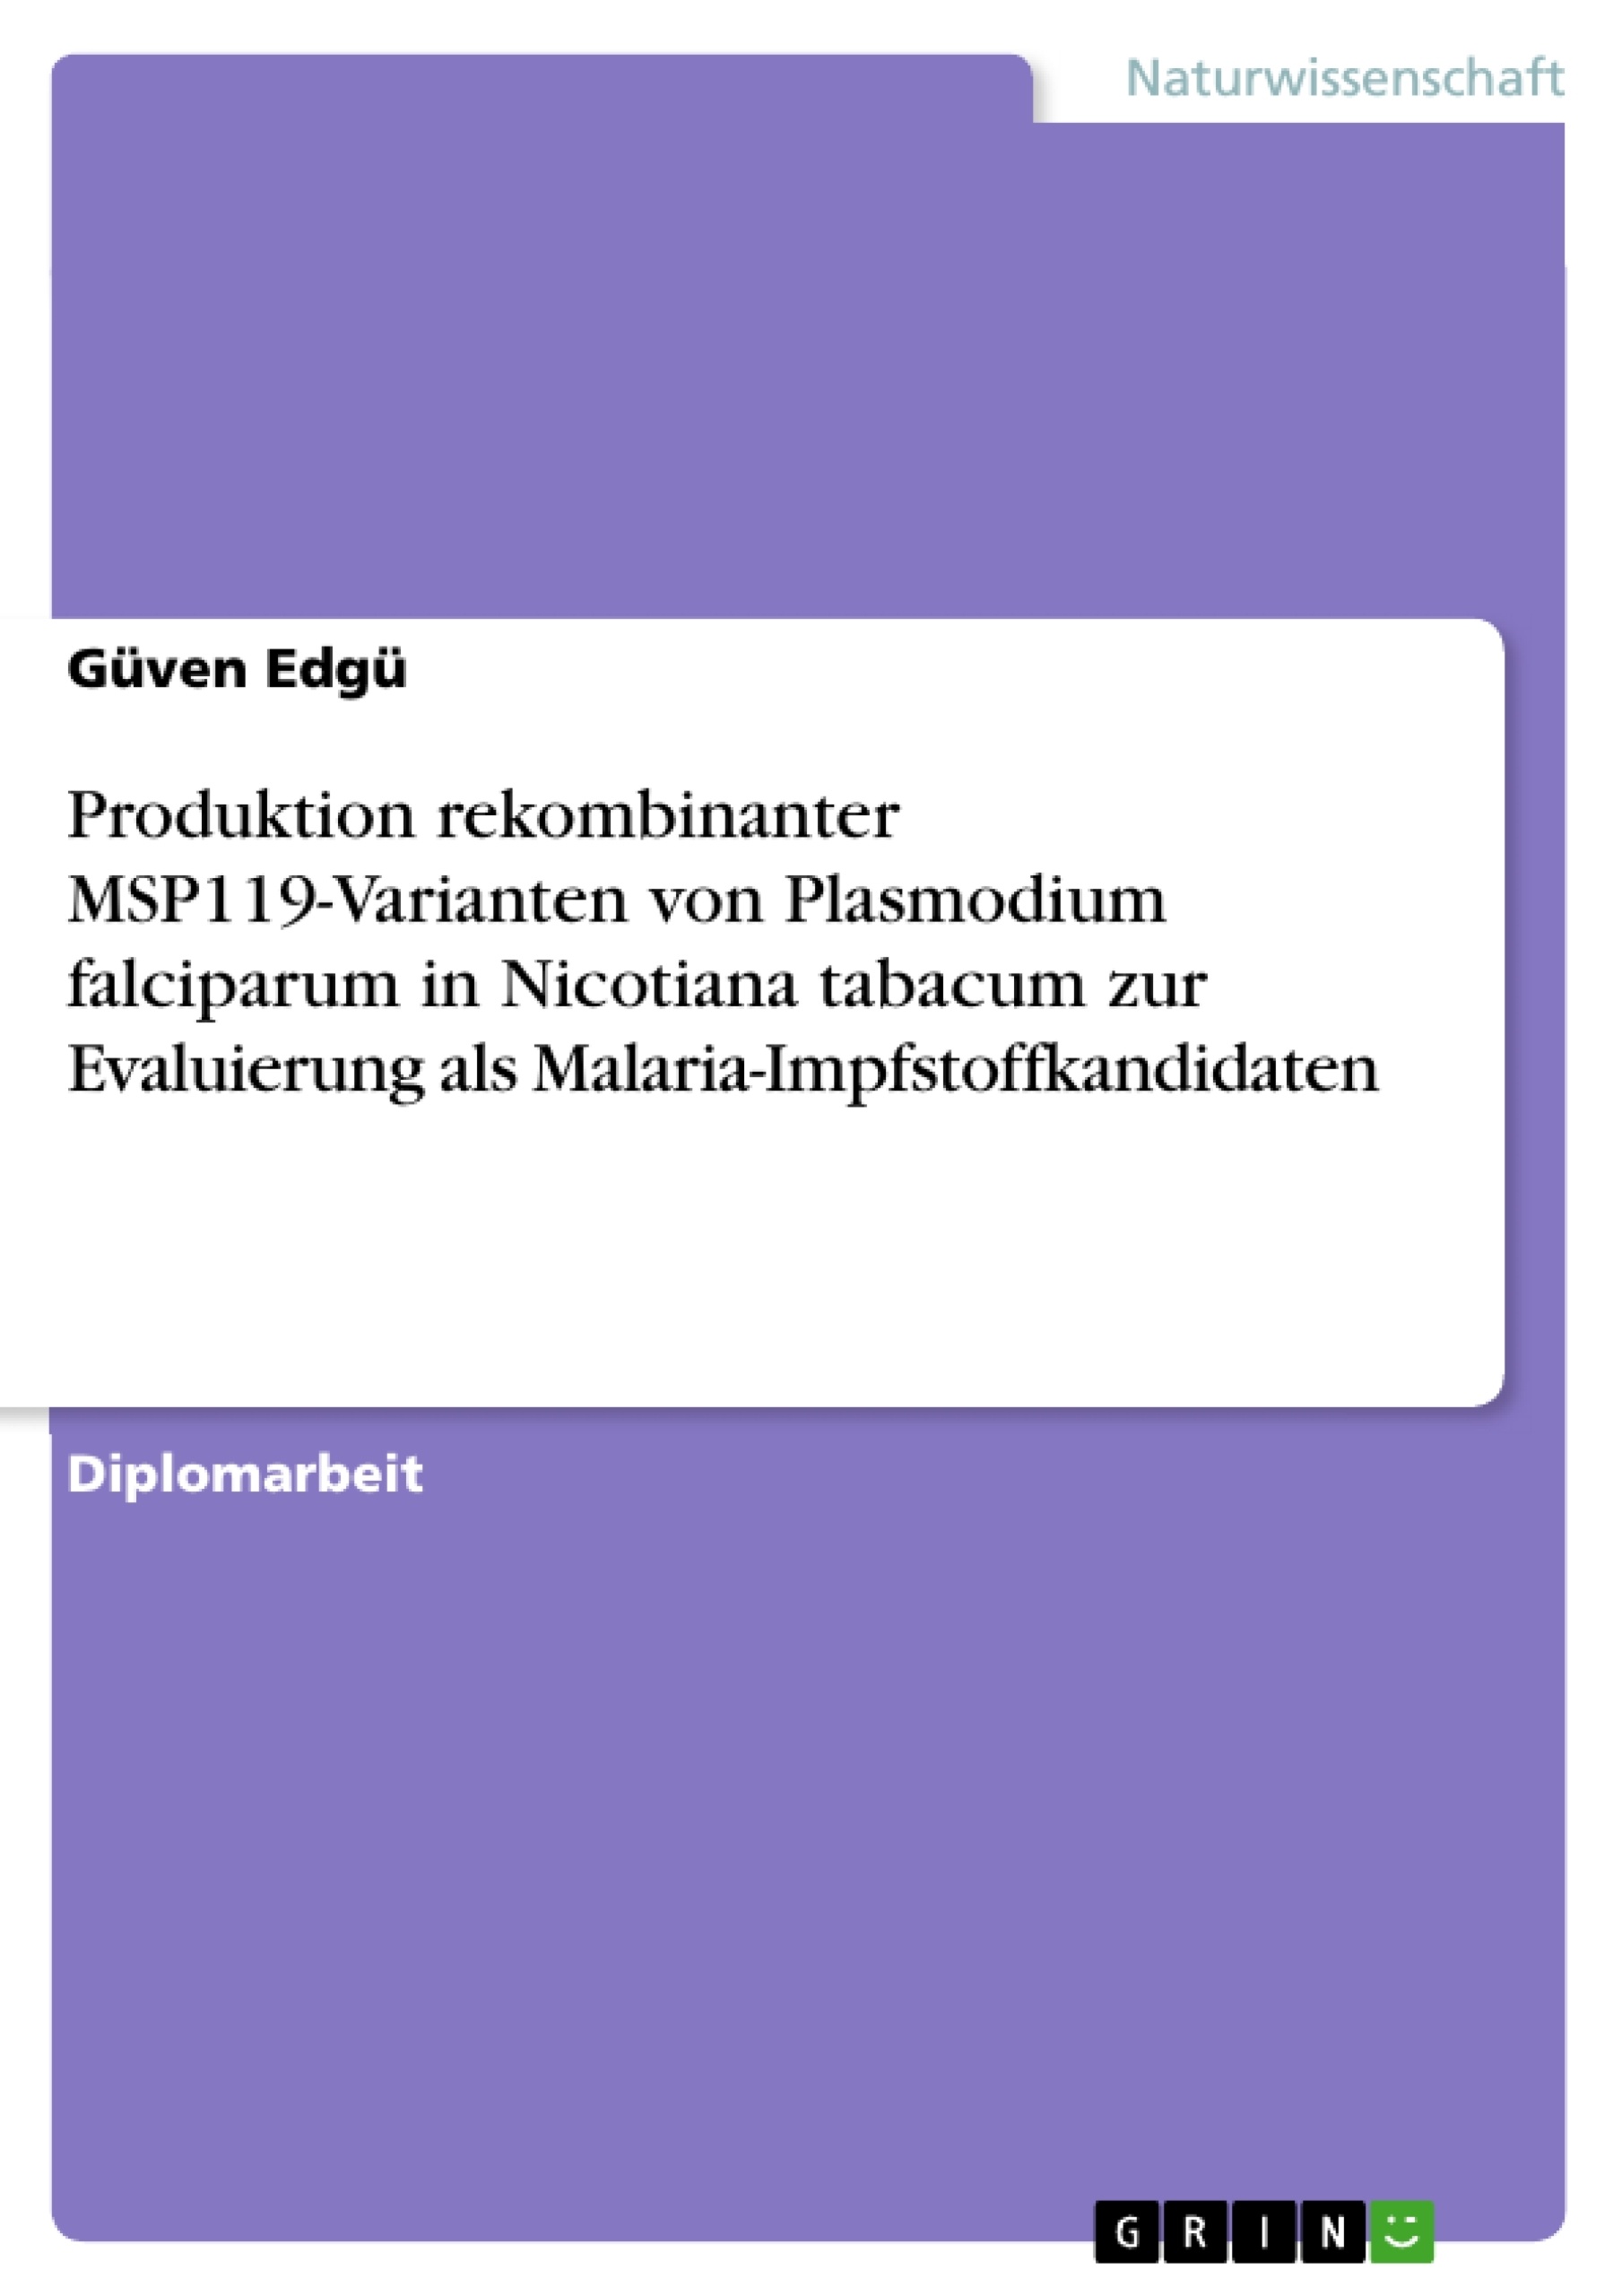 Titre: Produktion rekombinanter MSP119-Varianten von Plasmodium falciparum in Nicotiana tabacum zur Evaluierung als Malaria-Impfstoffkandidaten